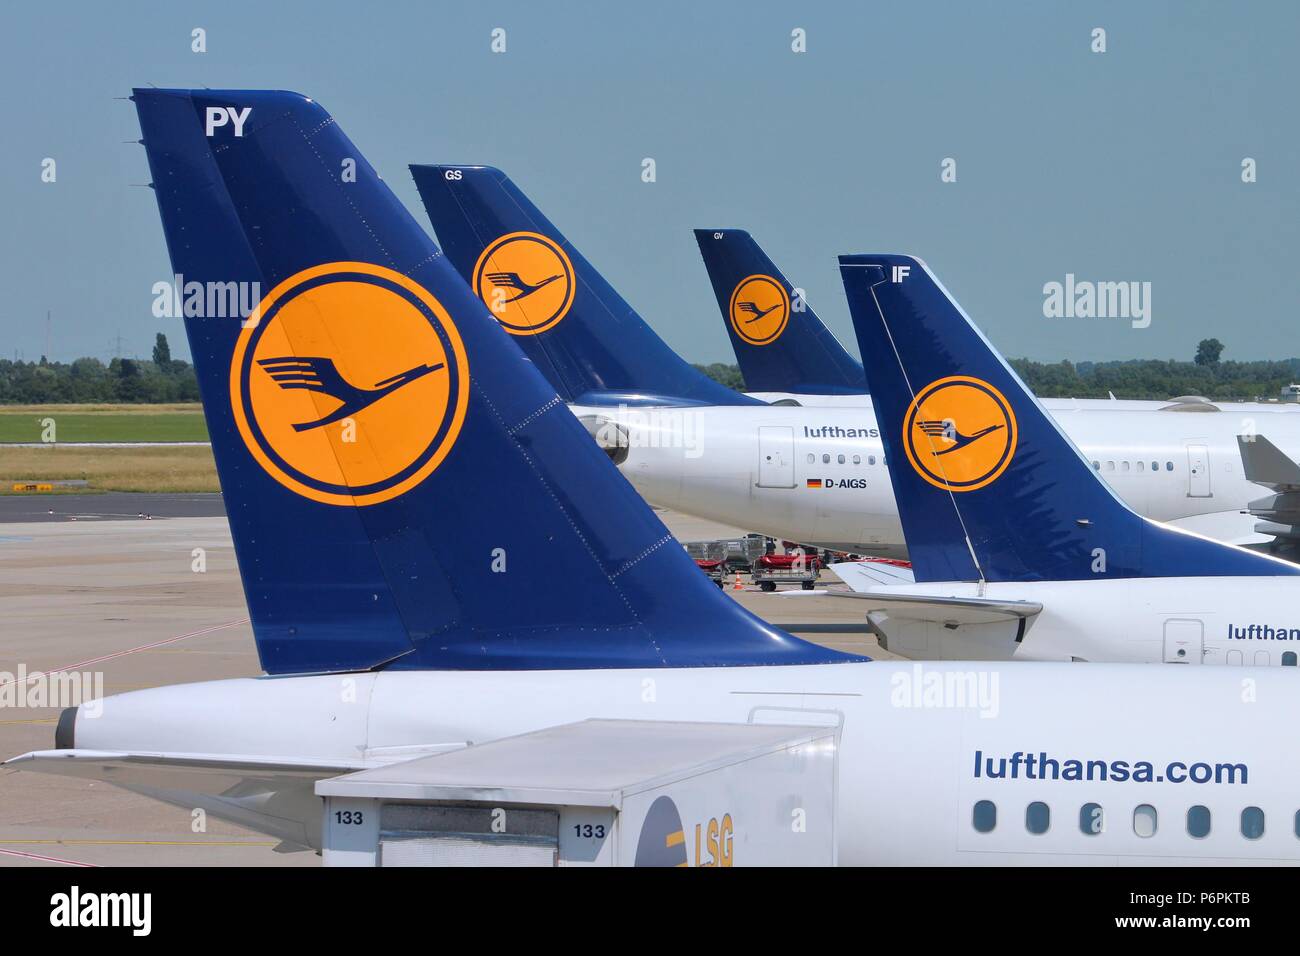 DUSSELDORF, Germania - 8 luglio: più aerei Lufthansa attendere su luglio 8, 2013 in aeroporto di Dusseldorf, Germania. Gruppo Lufthansa portato oltre 103 millio Foto Stock